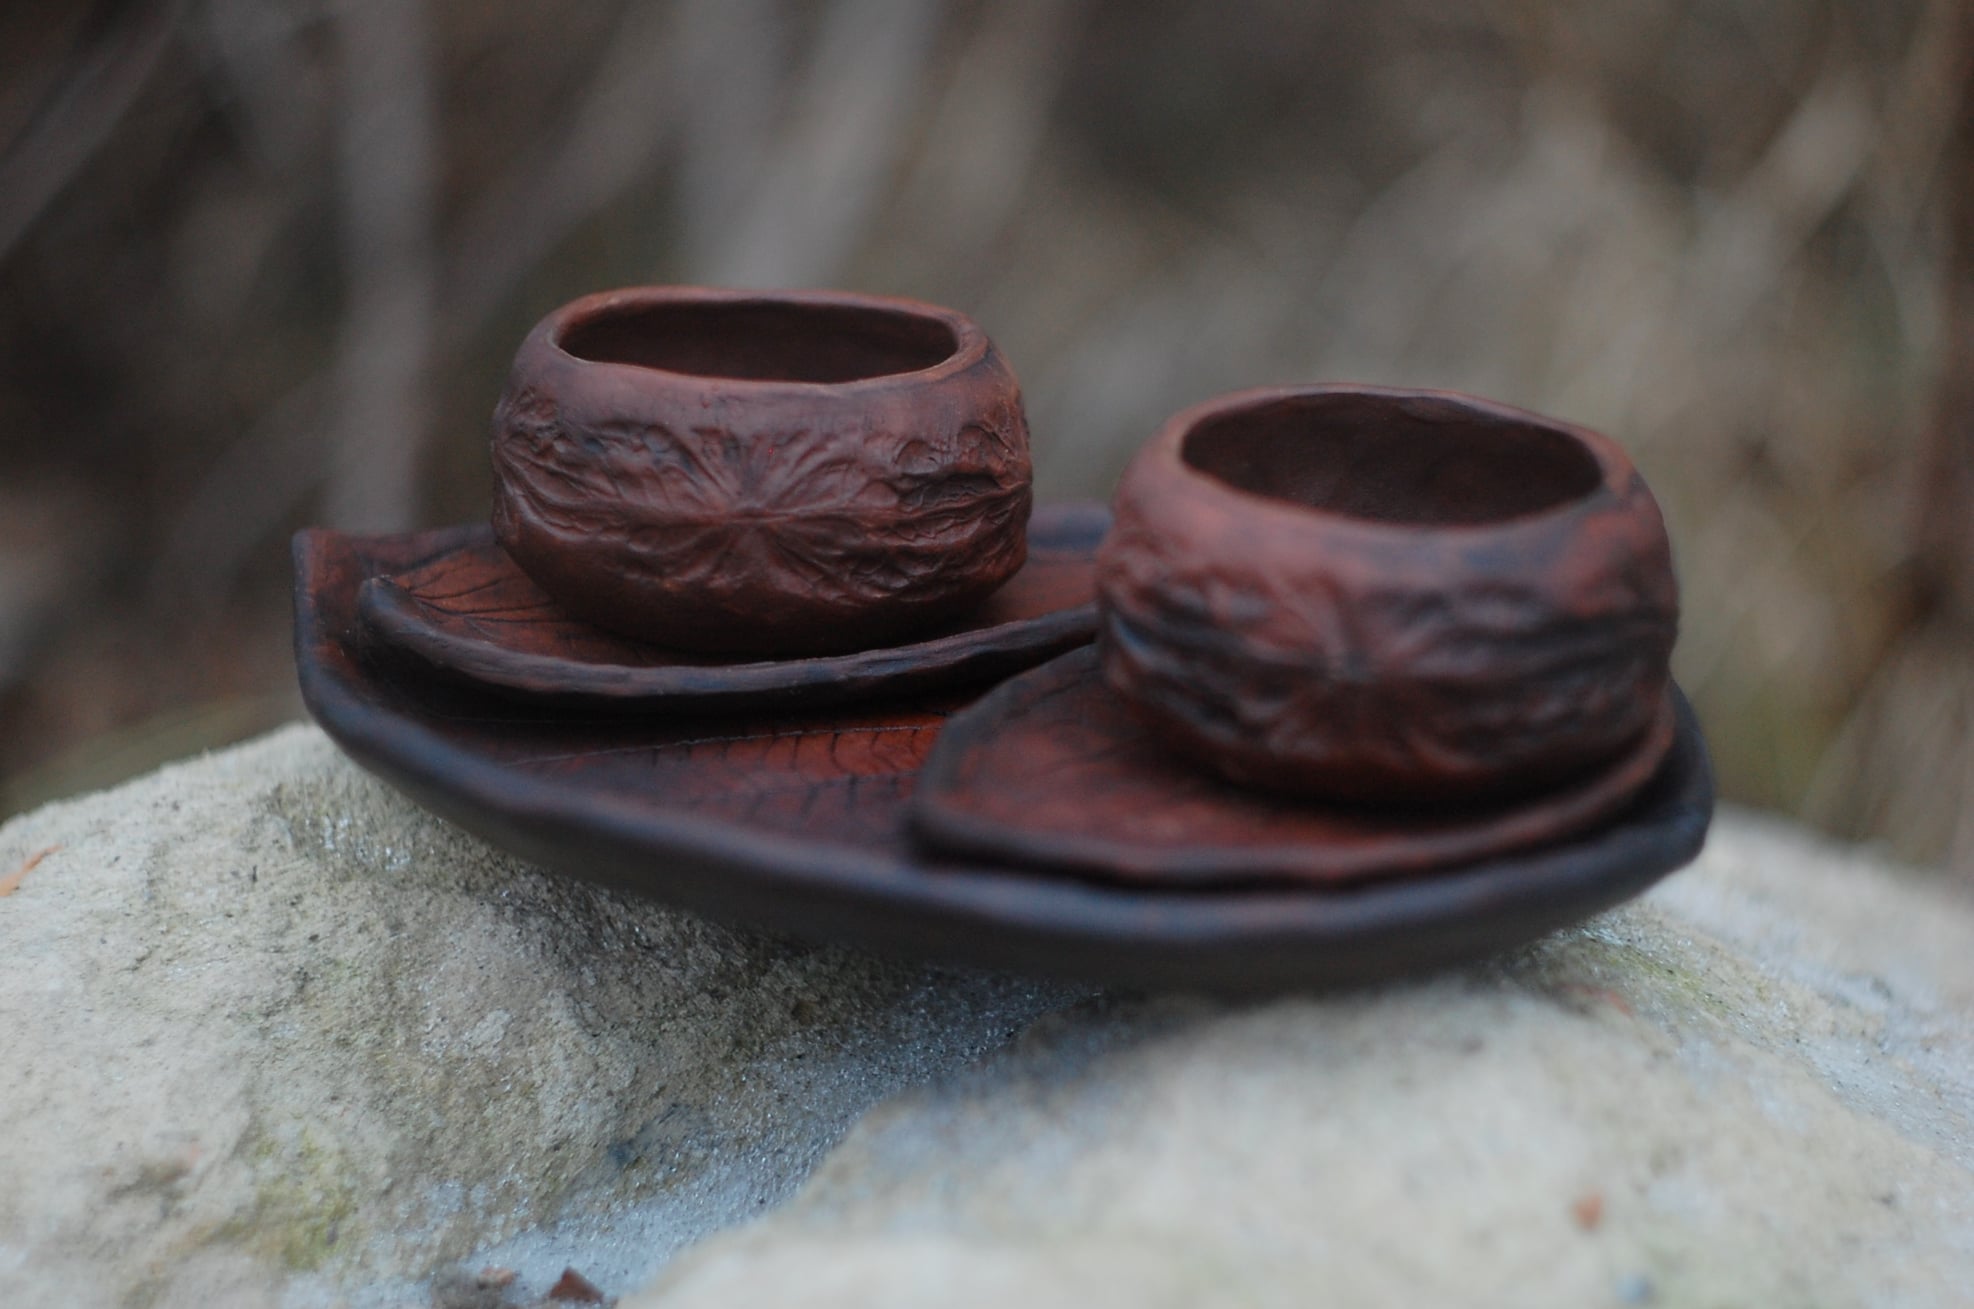 Pottery mug set of 2 mugs "Walnut" w/ 2 leaf shaped saucers